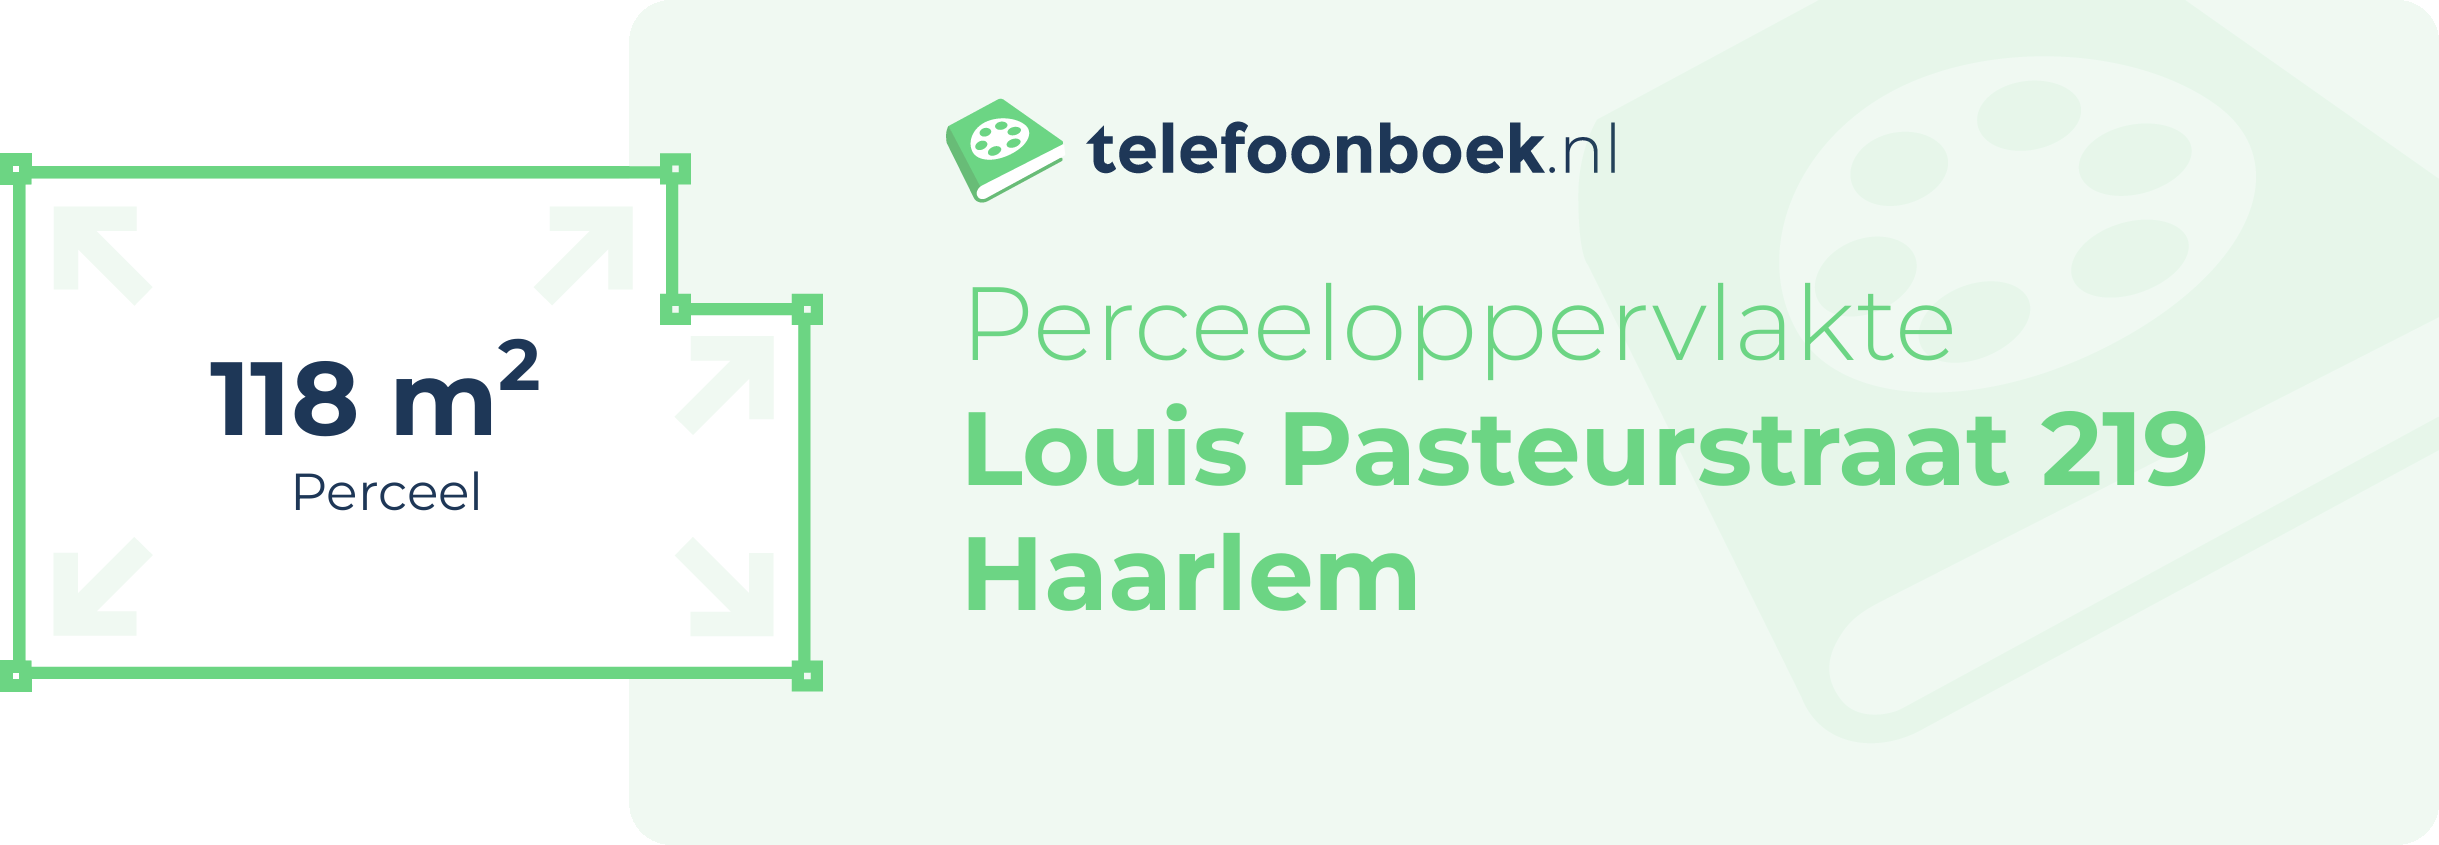 Perceeloppervlakte Louis Pasteurstraat 219 Haarlem